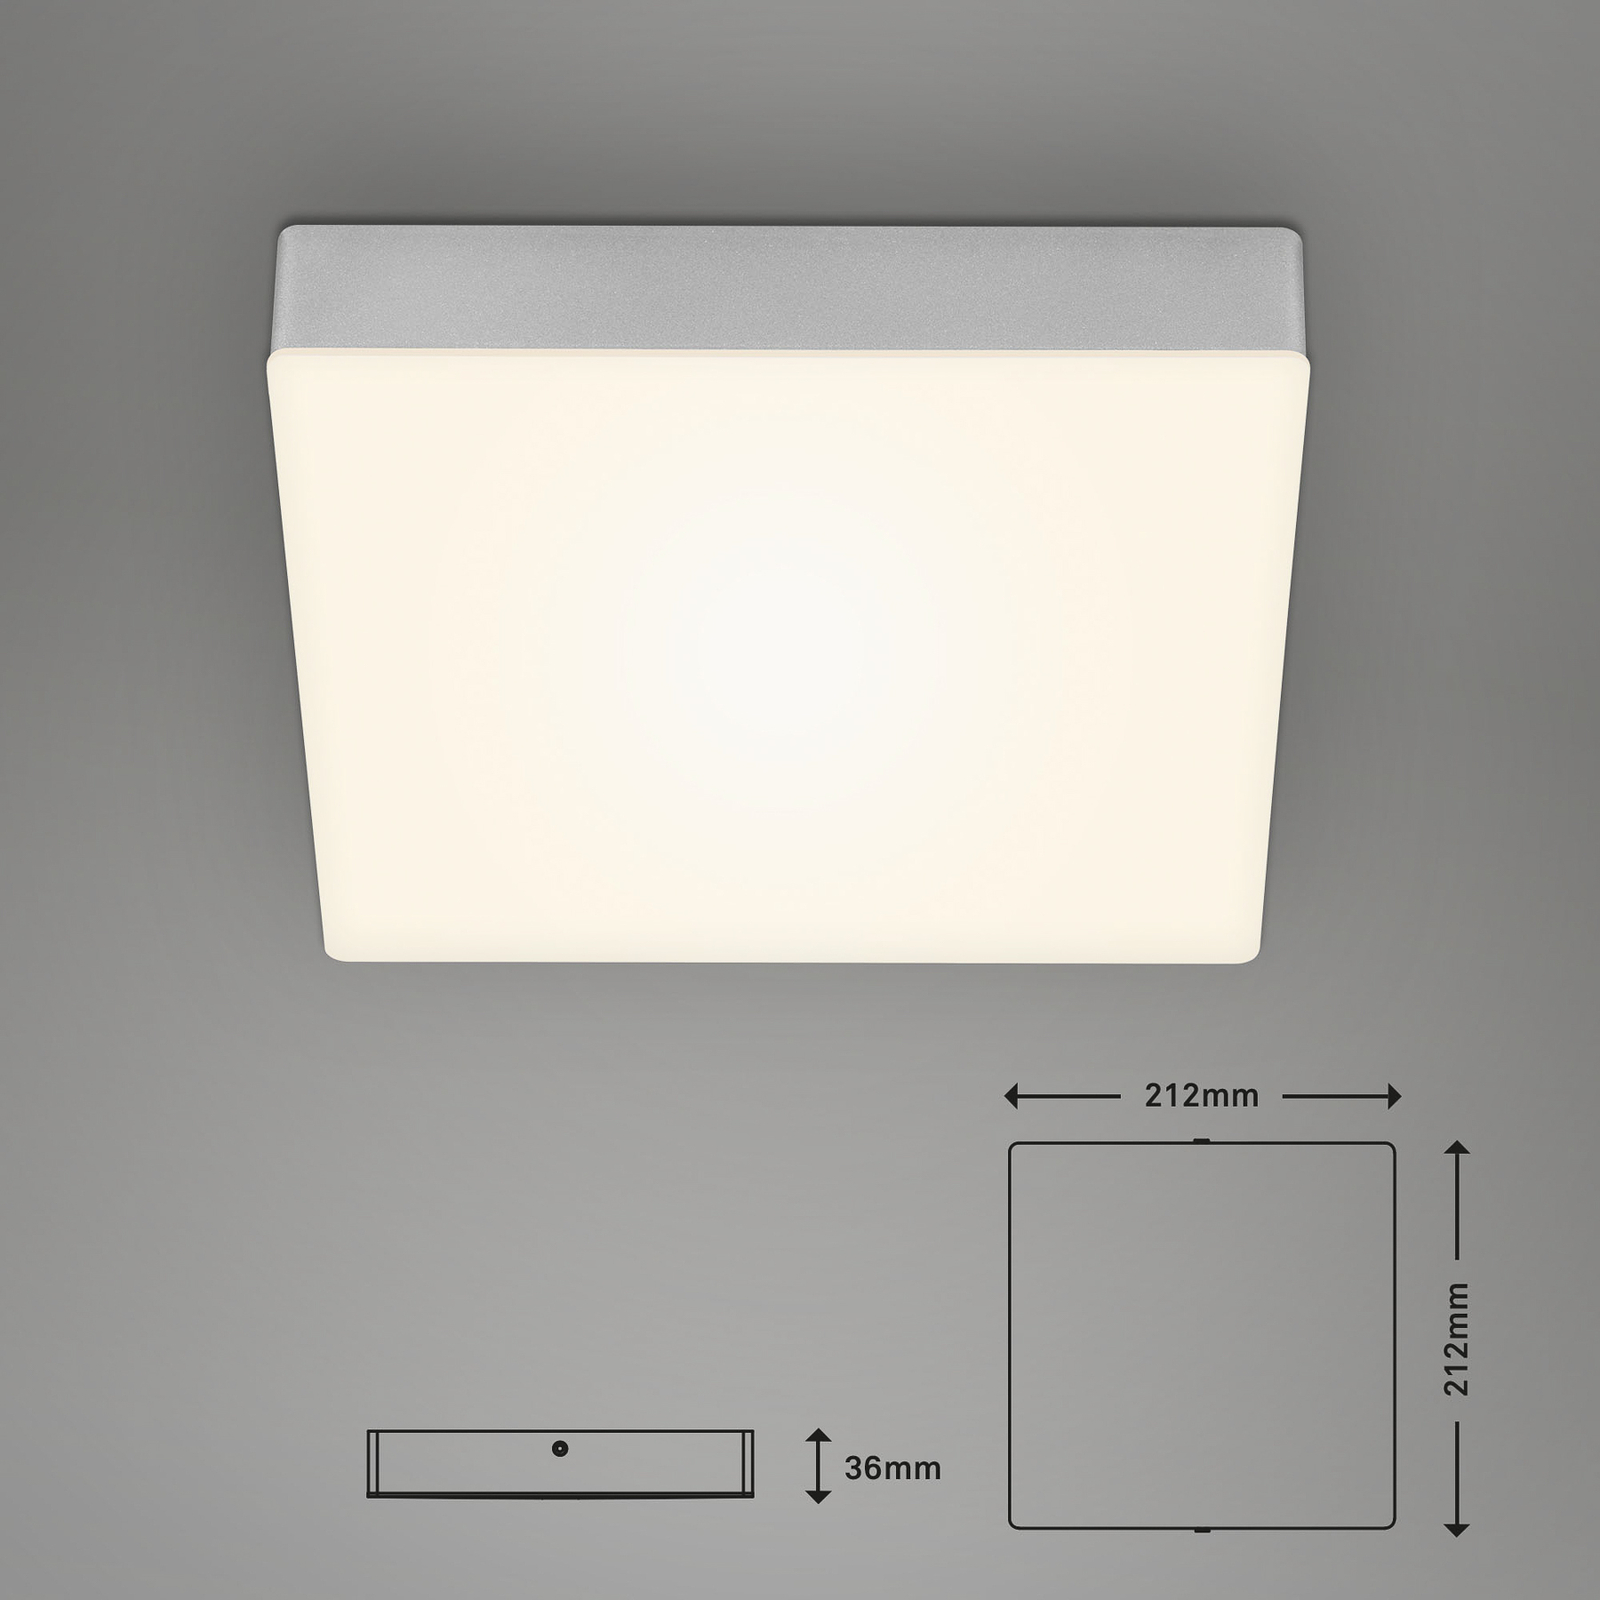 Stropní svítidlo LED Flame, 21,2 x 21,2 cm, stříbrné